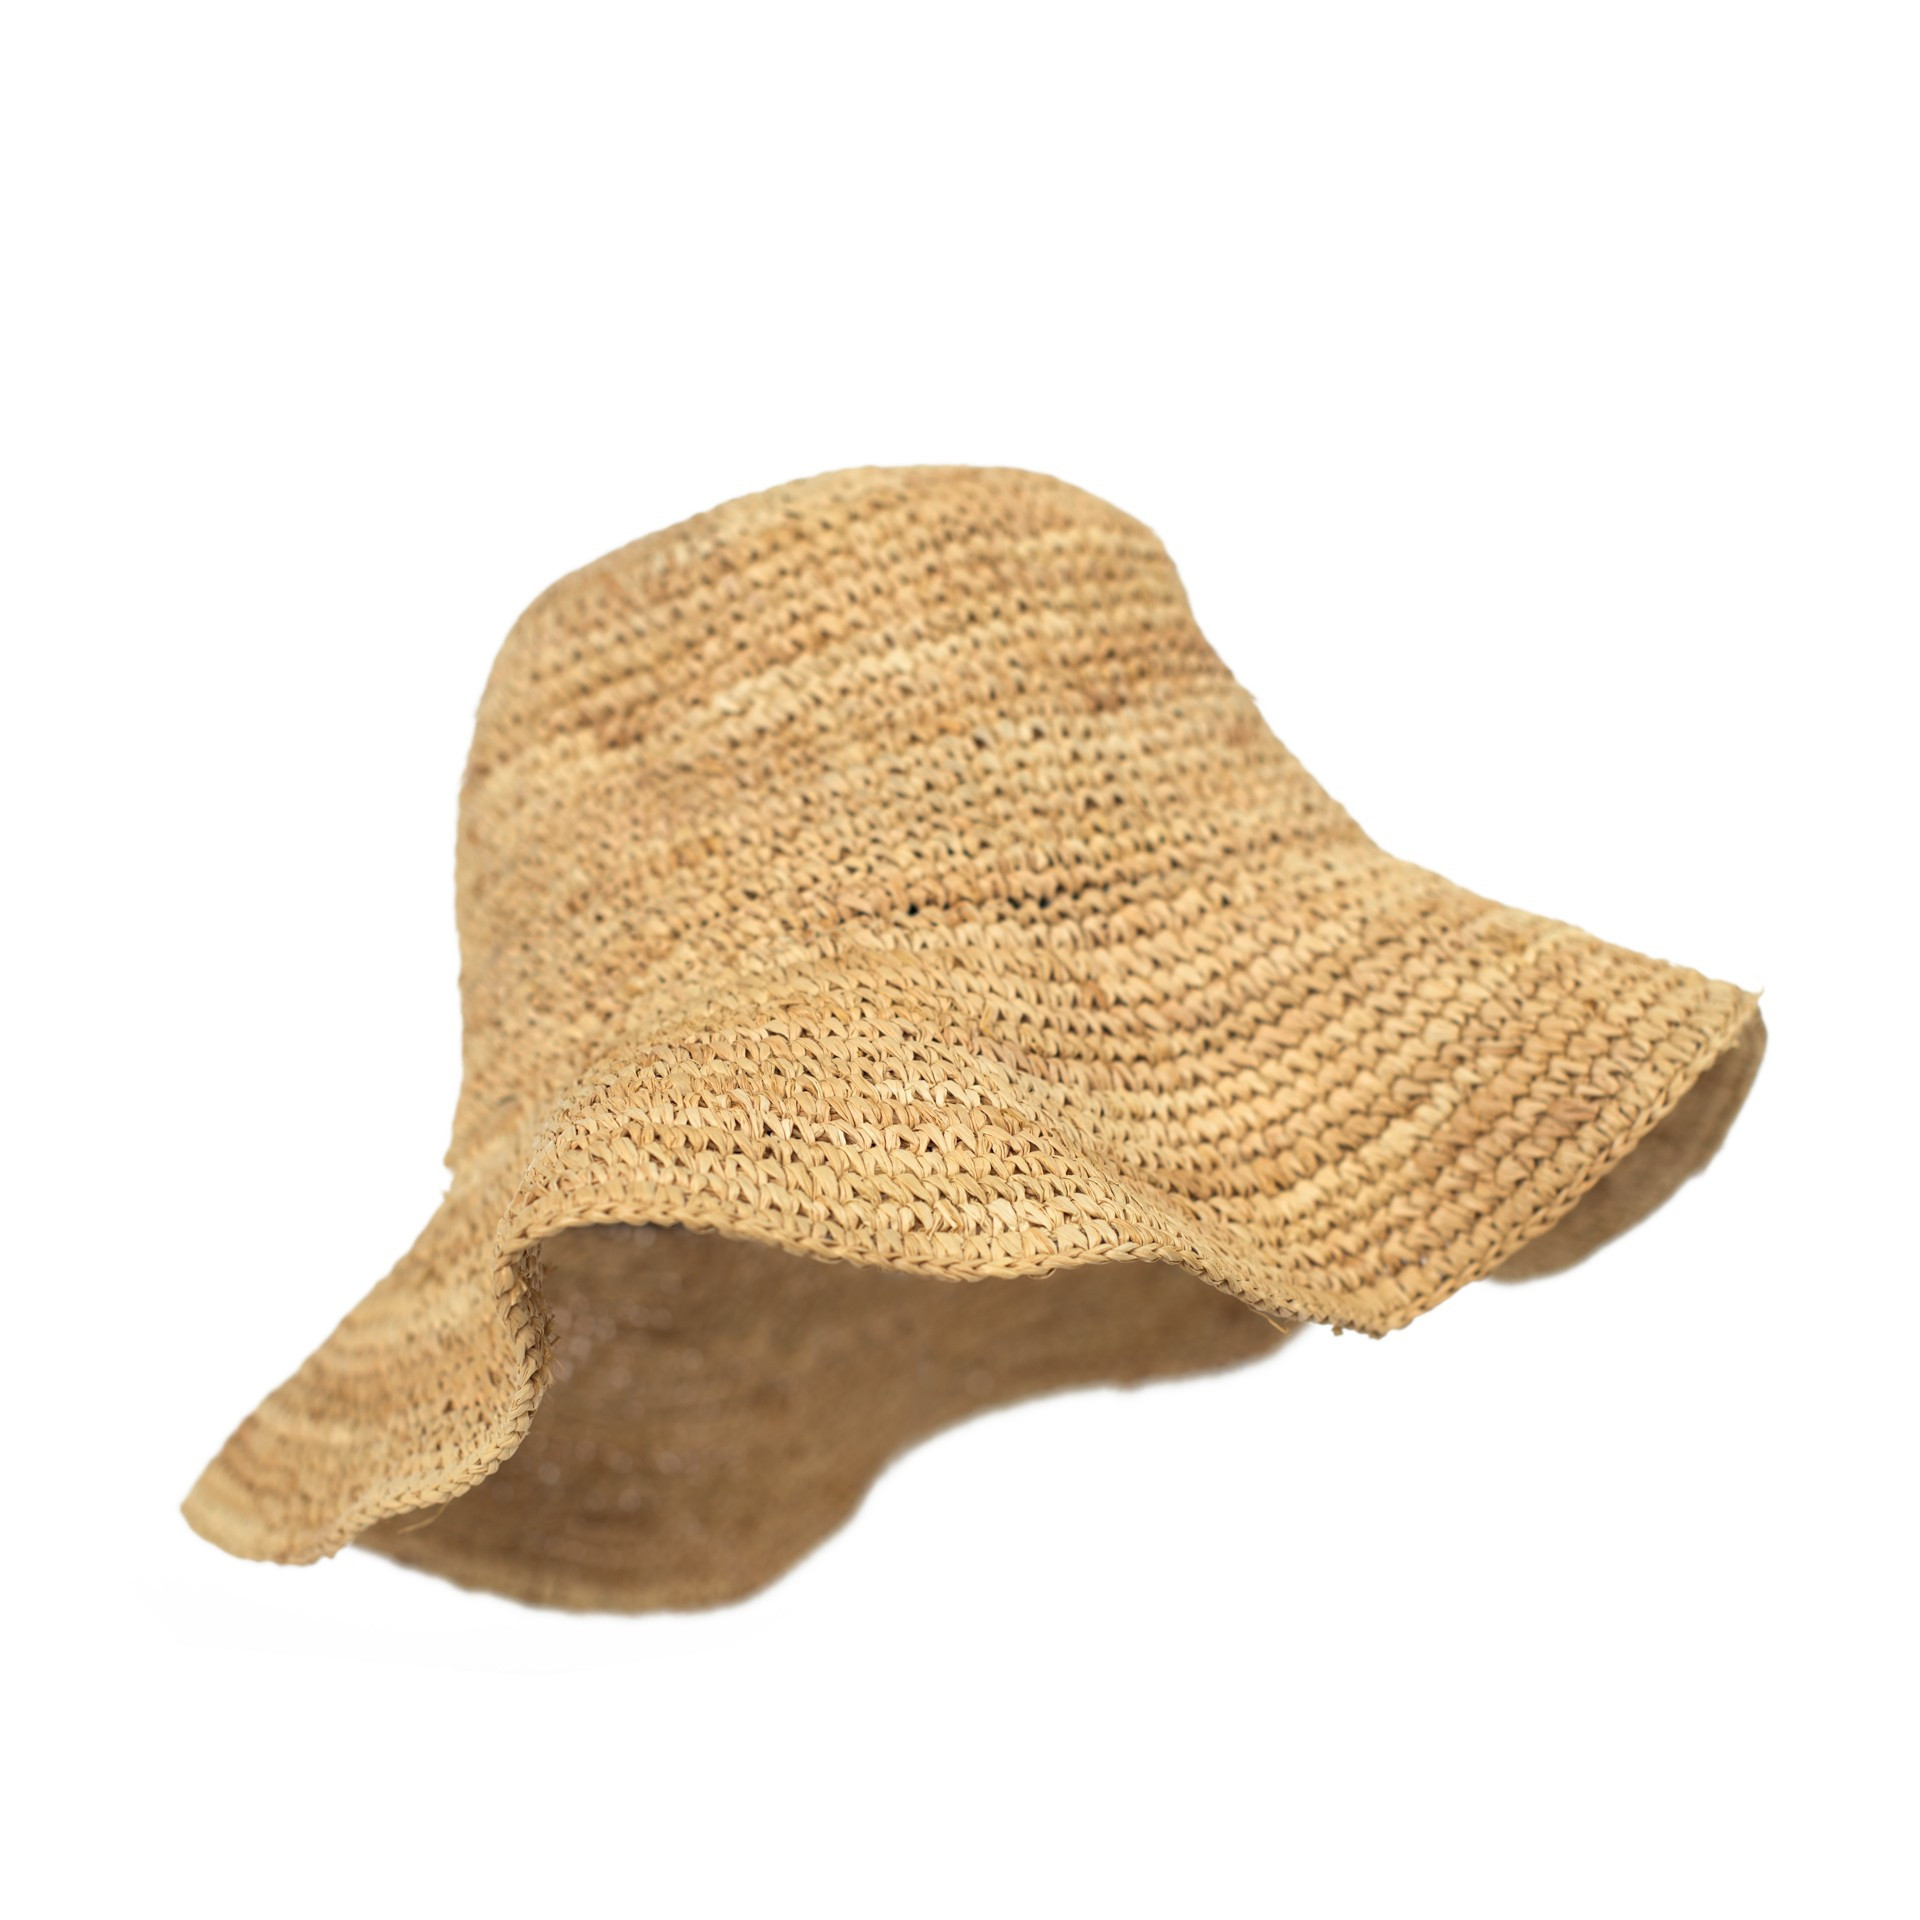 Dámský klobouk cz21171-1béžový 02-15 béžová bez velikosti